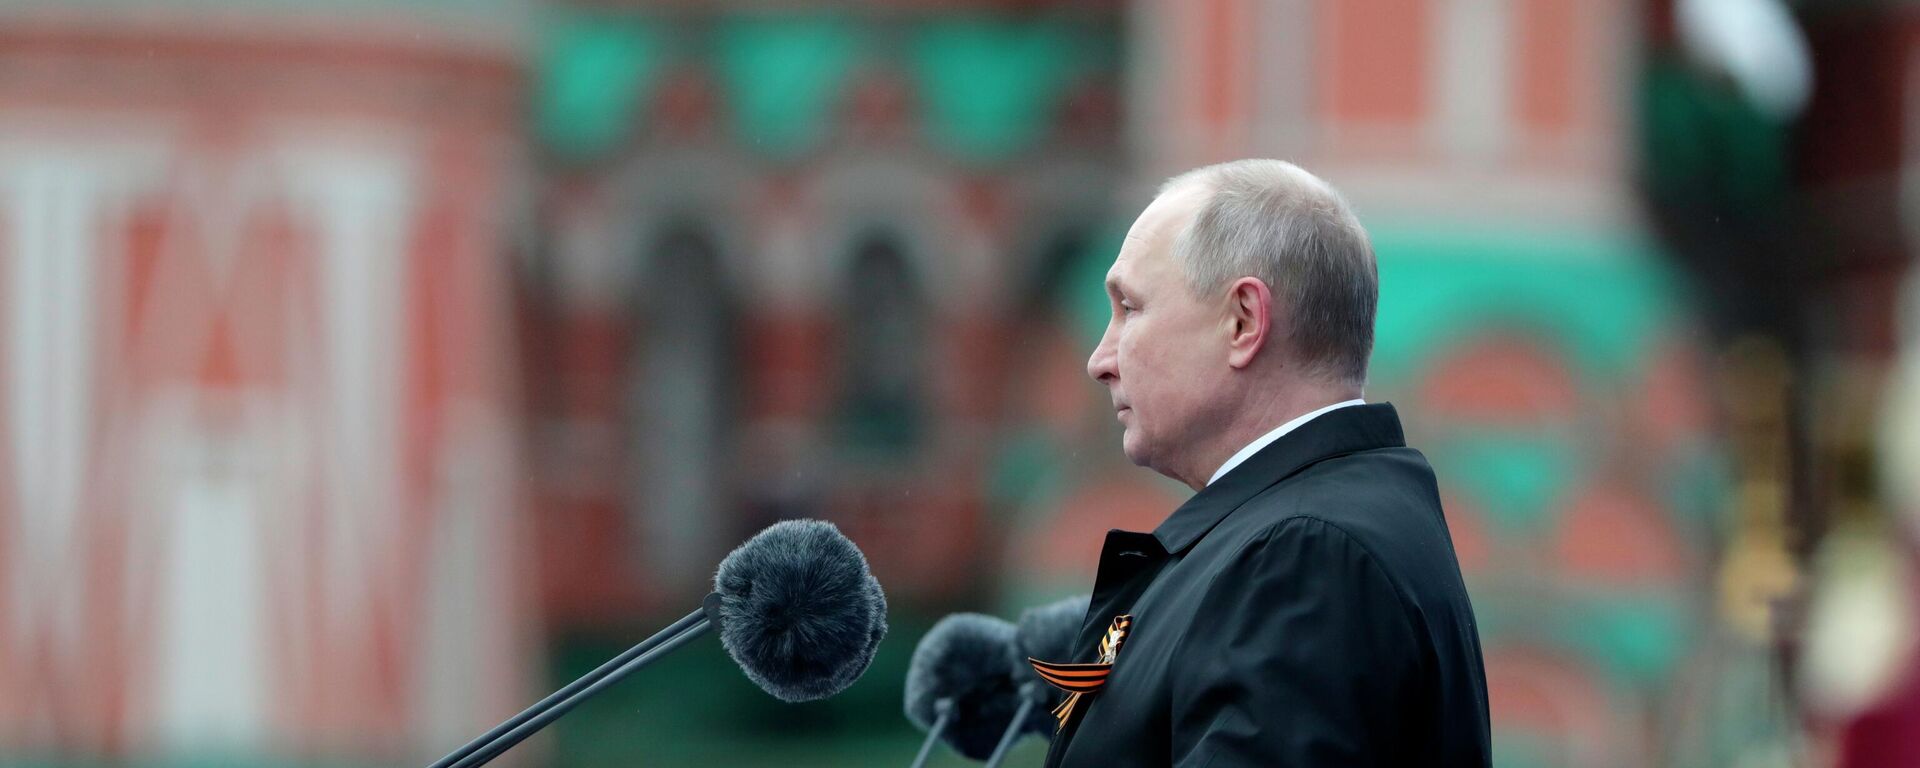 El presidente de Rusia, Vladímir Putin, durante el desfile militar en Moscú - Sputnik Mundo, 1920, 09.05.2021